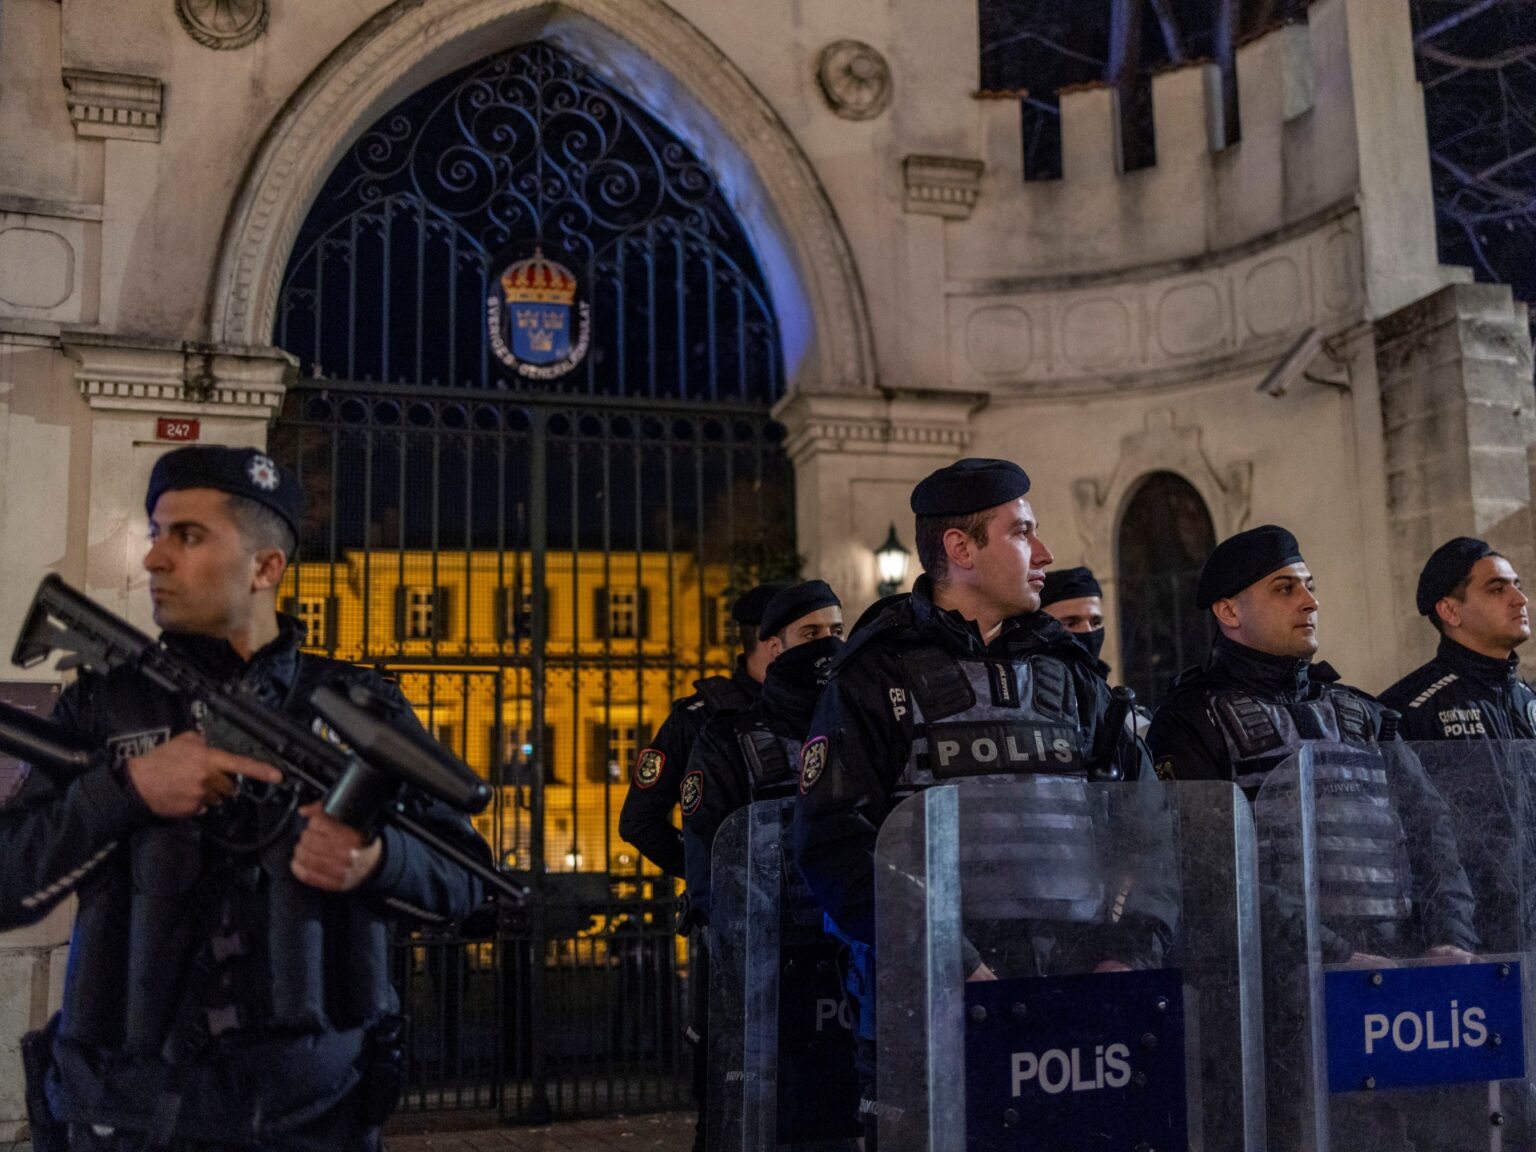 Turkey arrests 110 for suspected PKK ties ahead